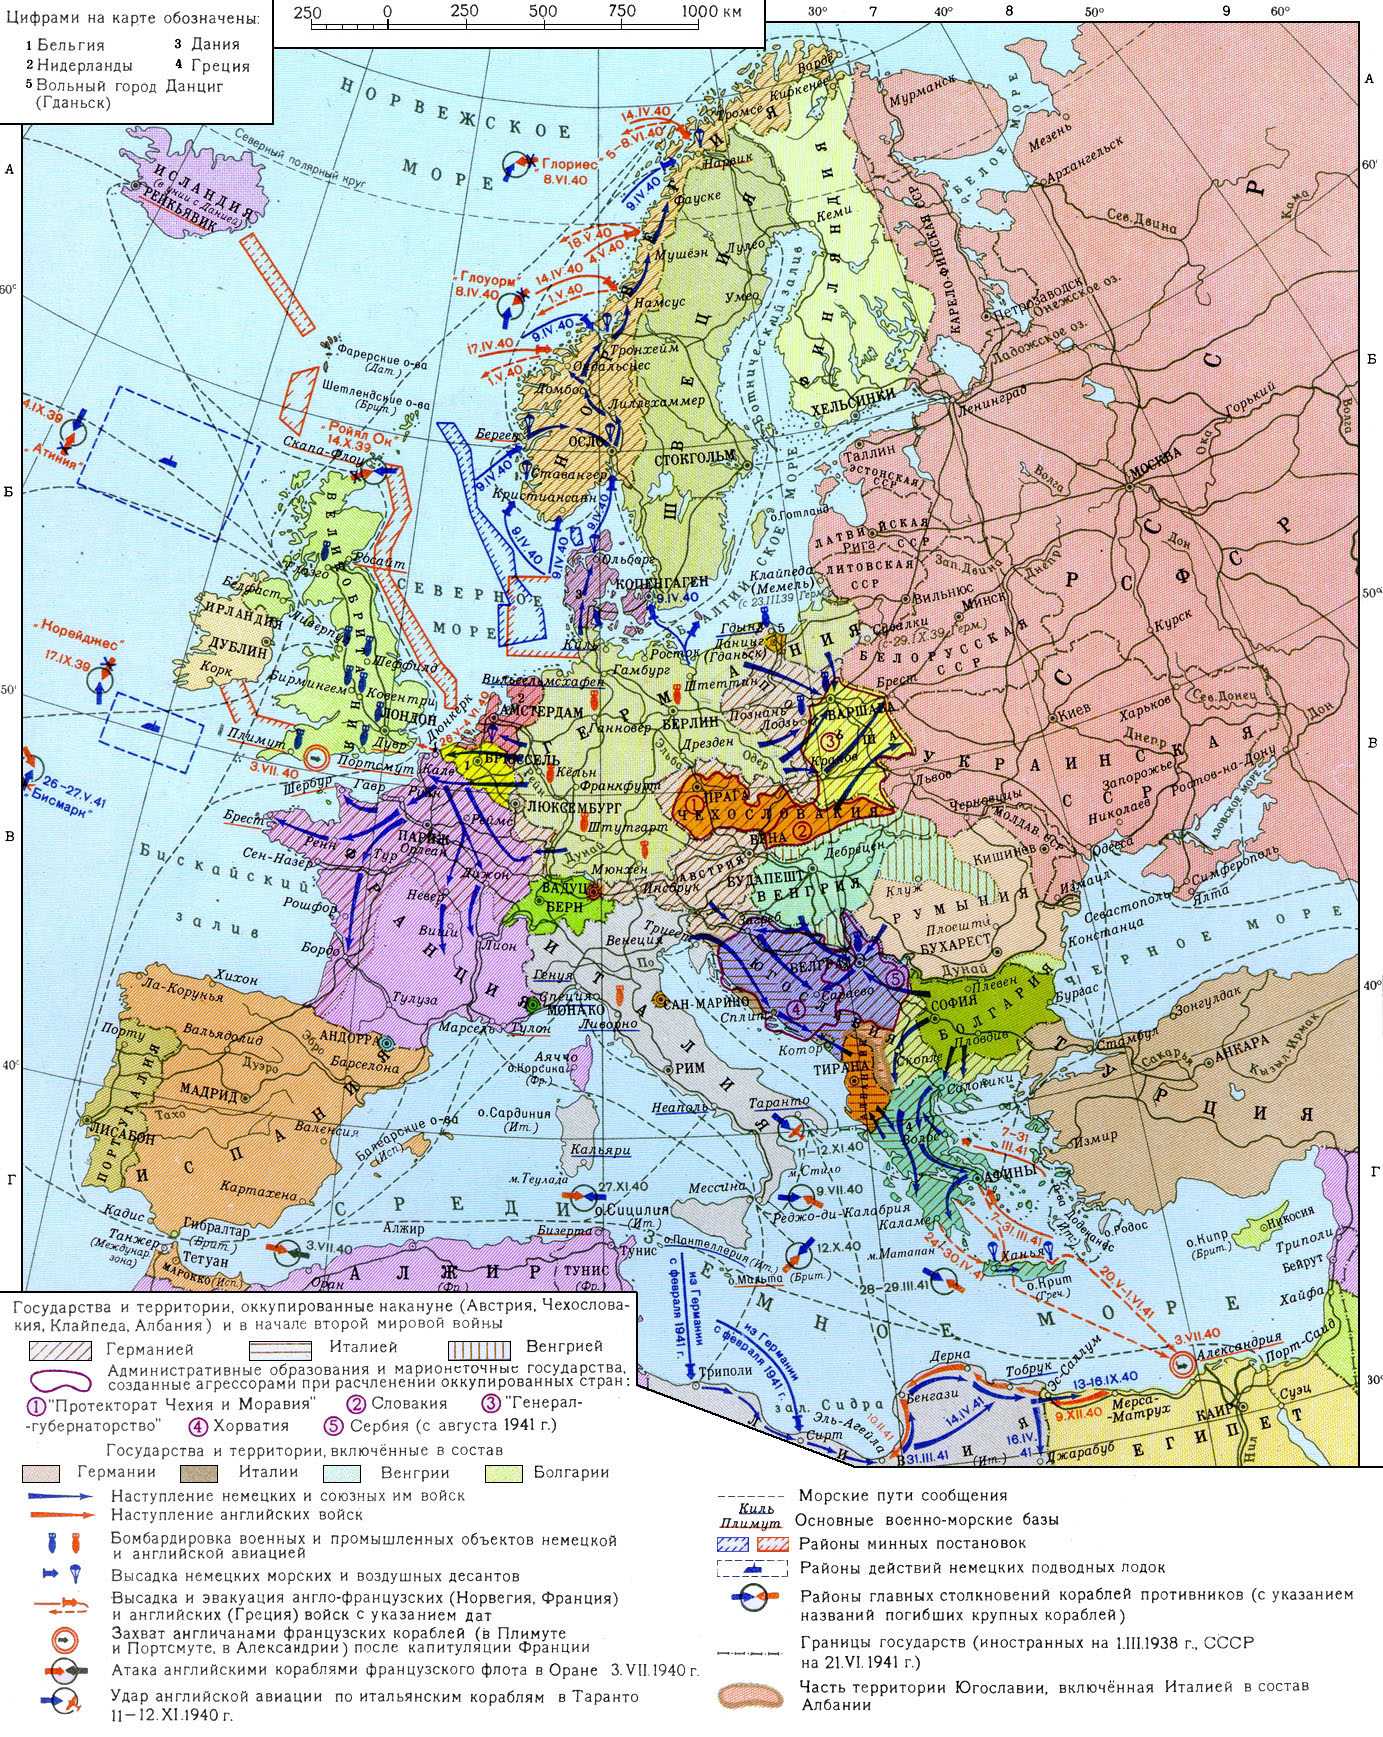 Выделите цветом территории германии и ее союзников. Карта второй мировой войны 1939-1945. Карта второй мировой 1939. Карта Европы на начало второй мировой войны.